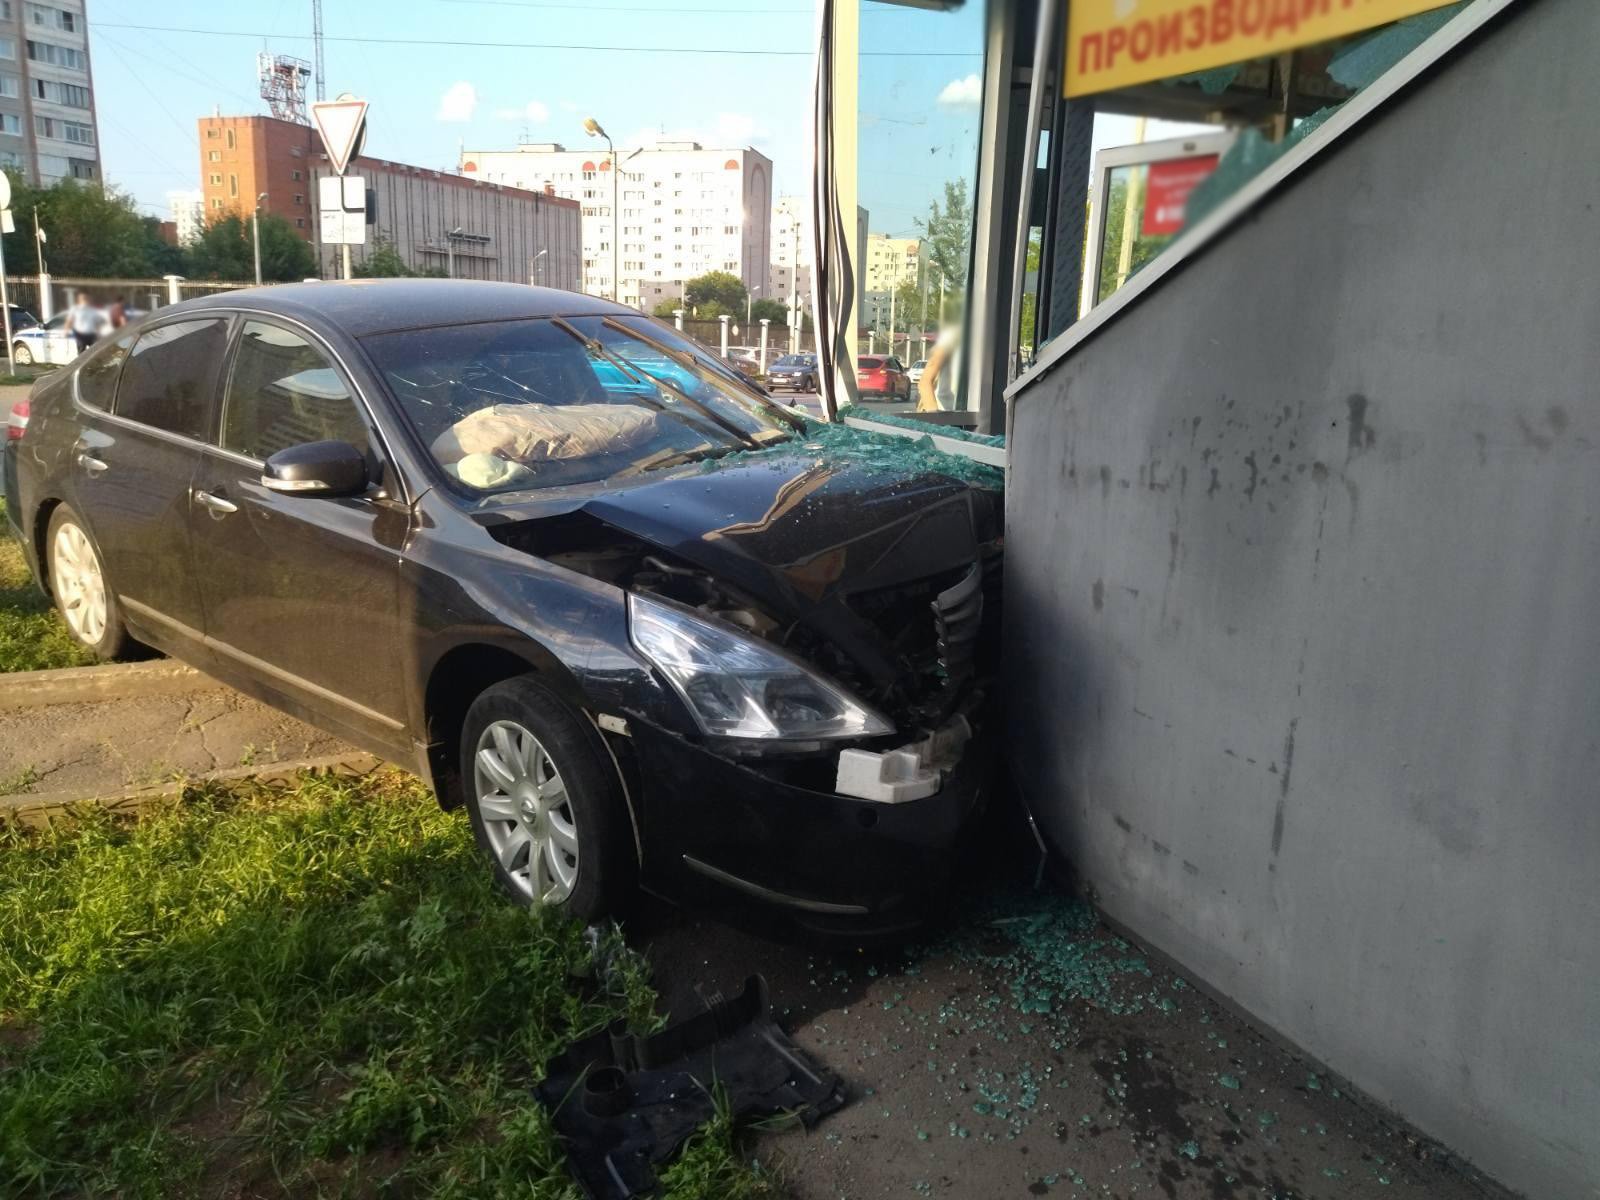 

В Ижевске водитель иномарки протаранил стену магазина

